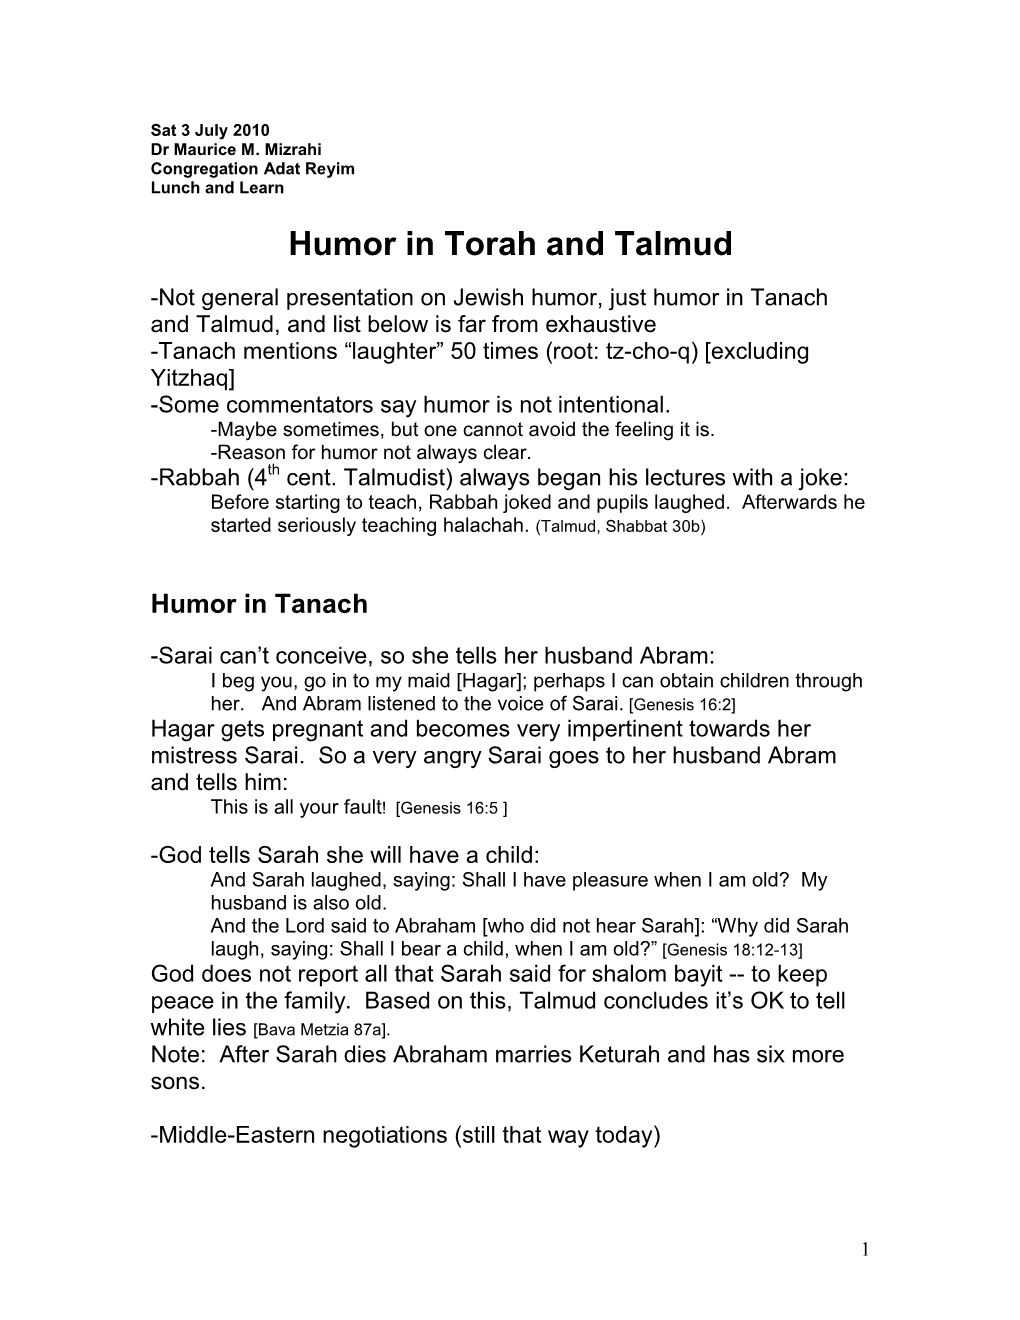 Humor in Torah and Talmud